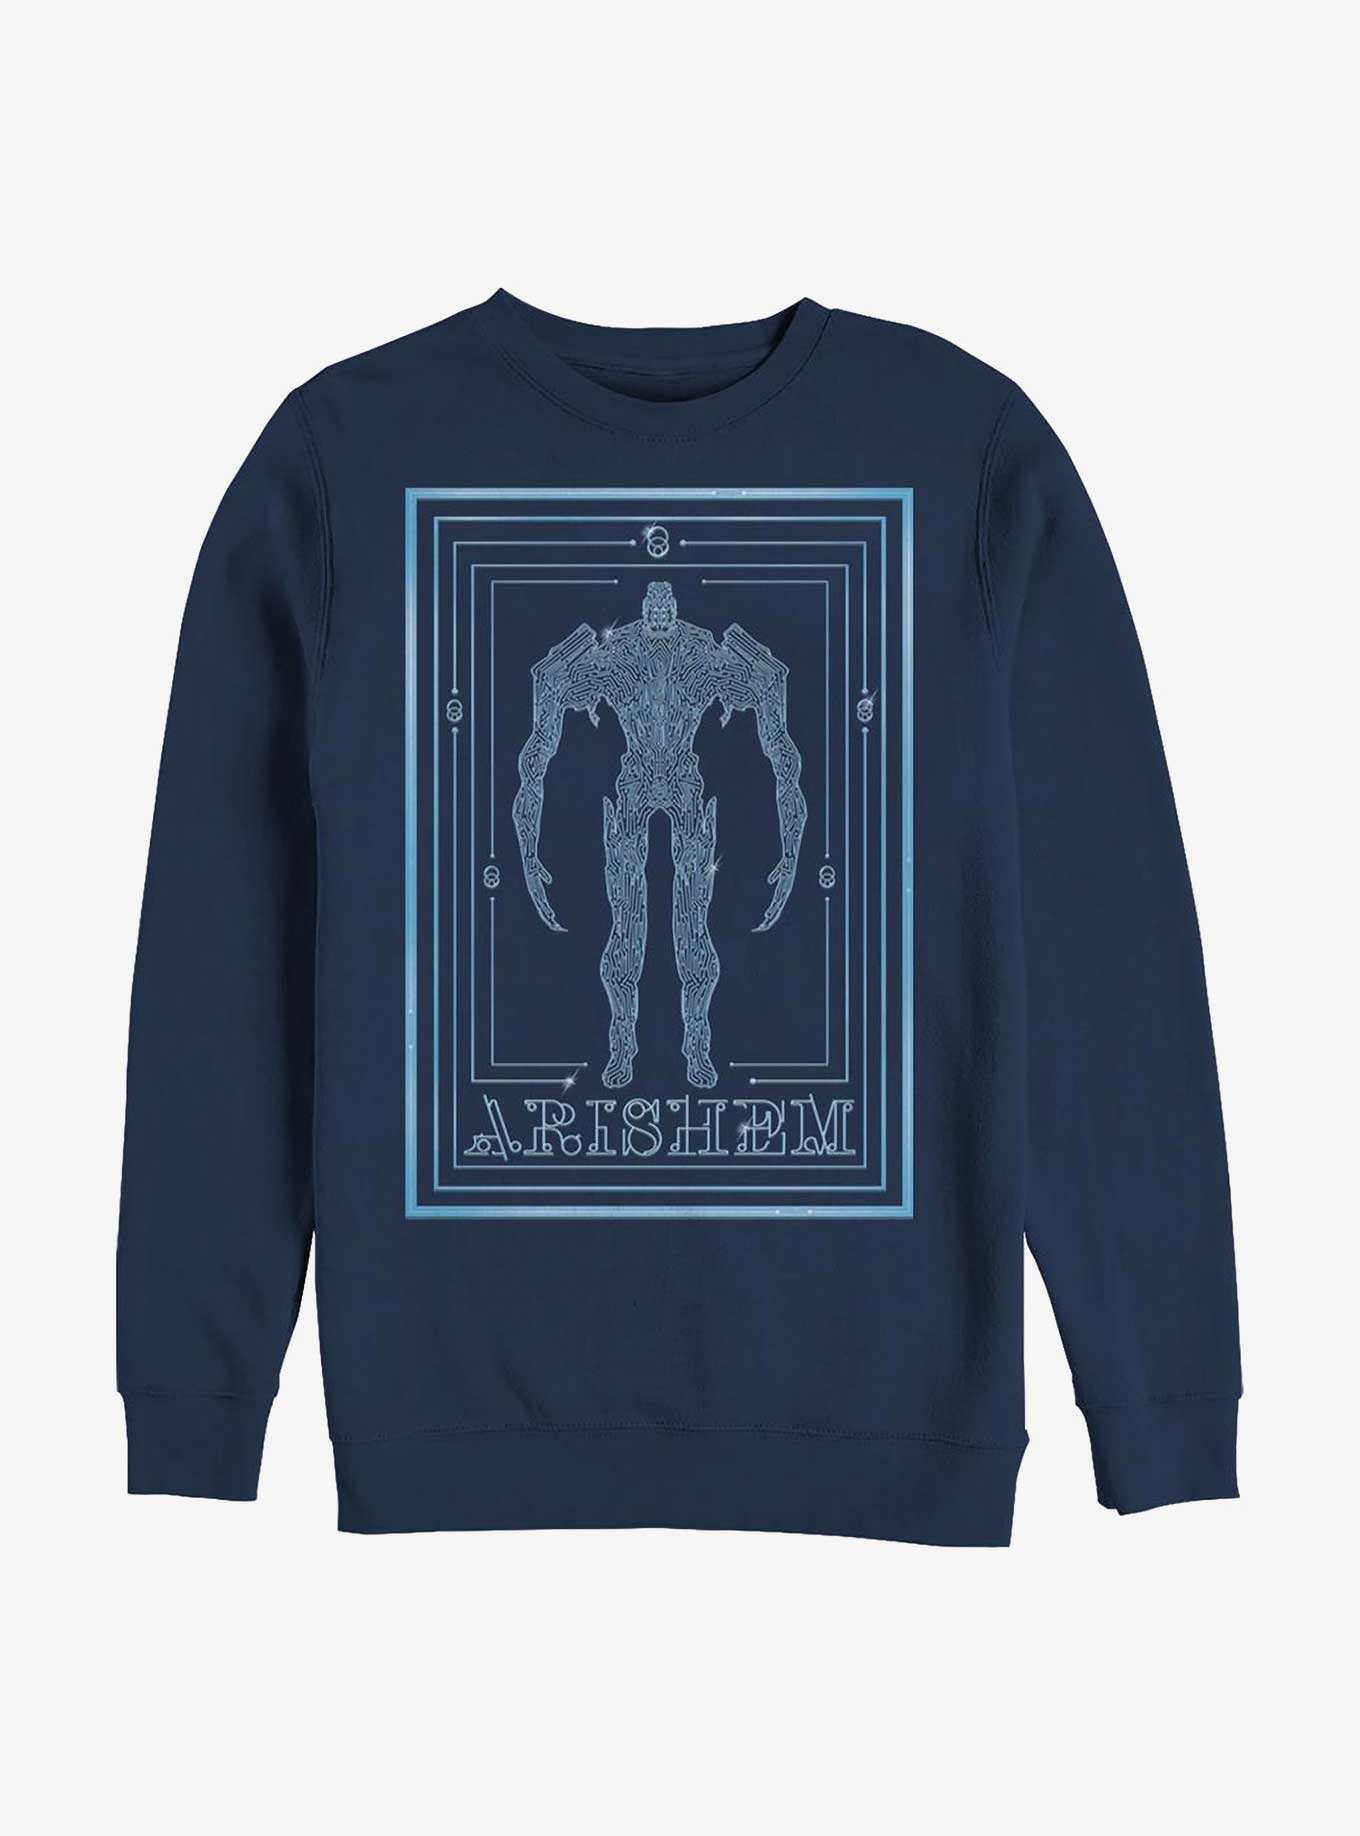 Marvel Eternals Arishem Poster Crew Sweatshirt, , hi-res